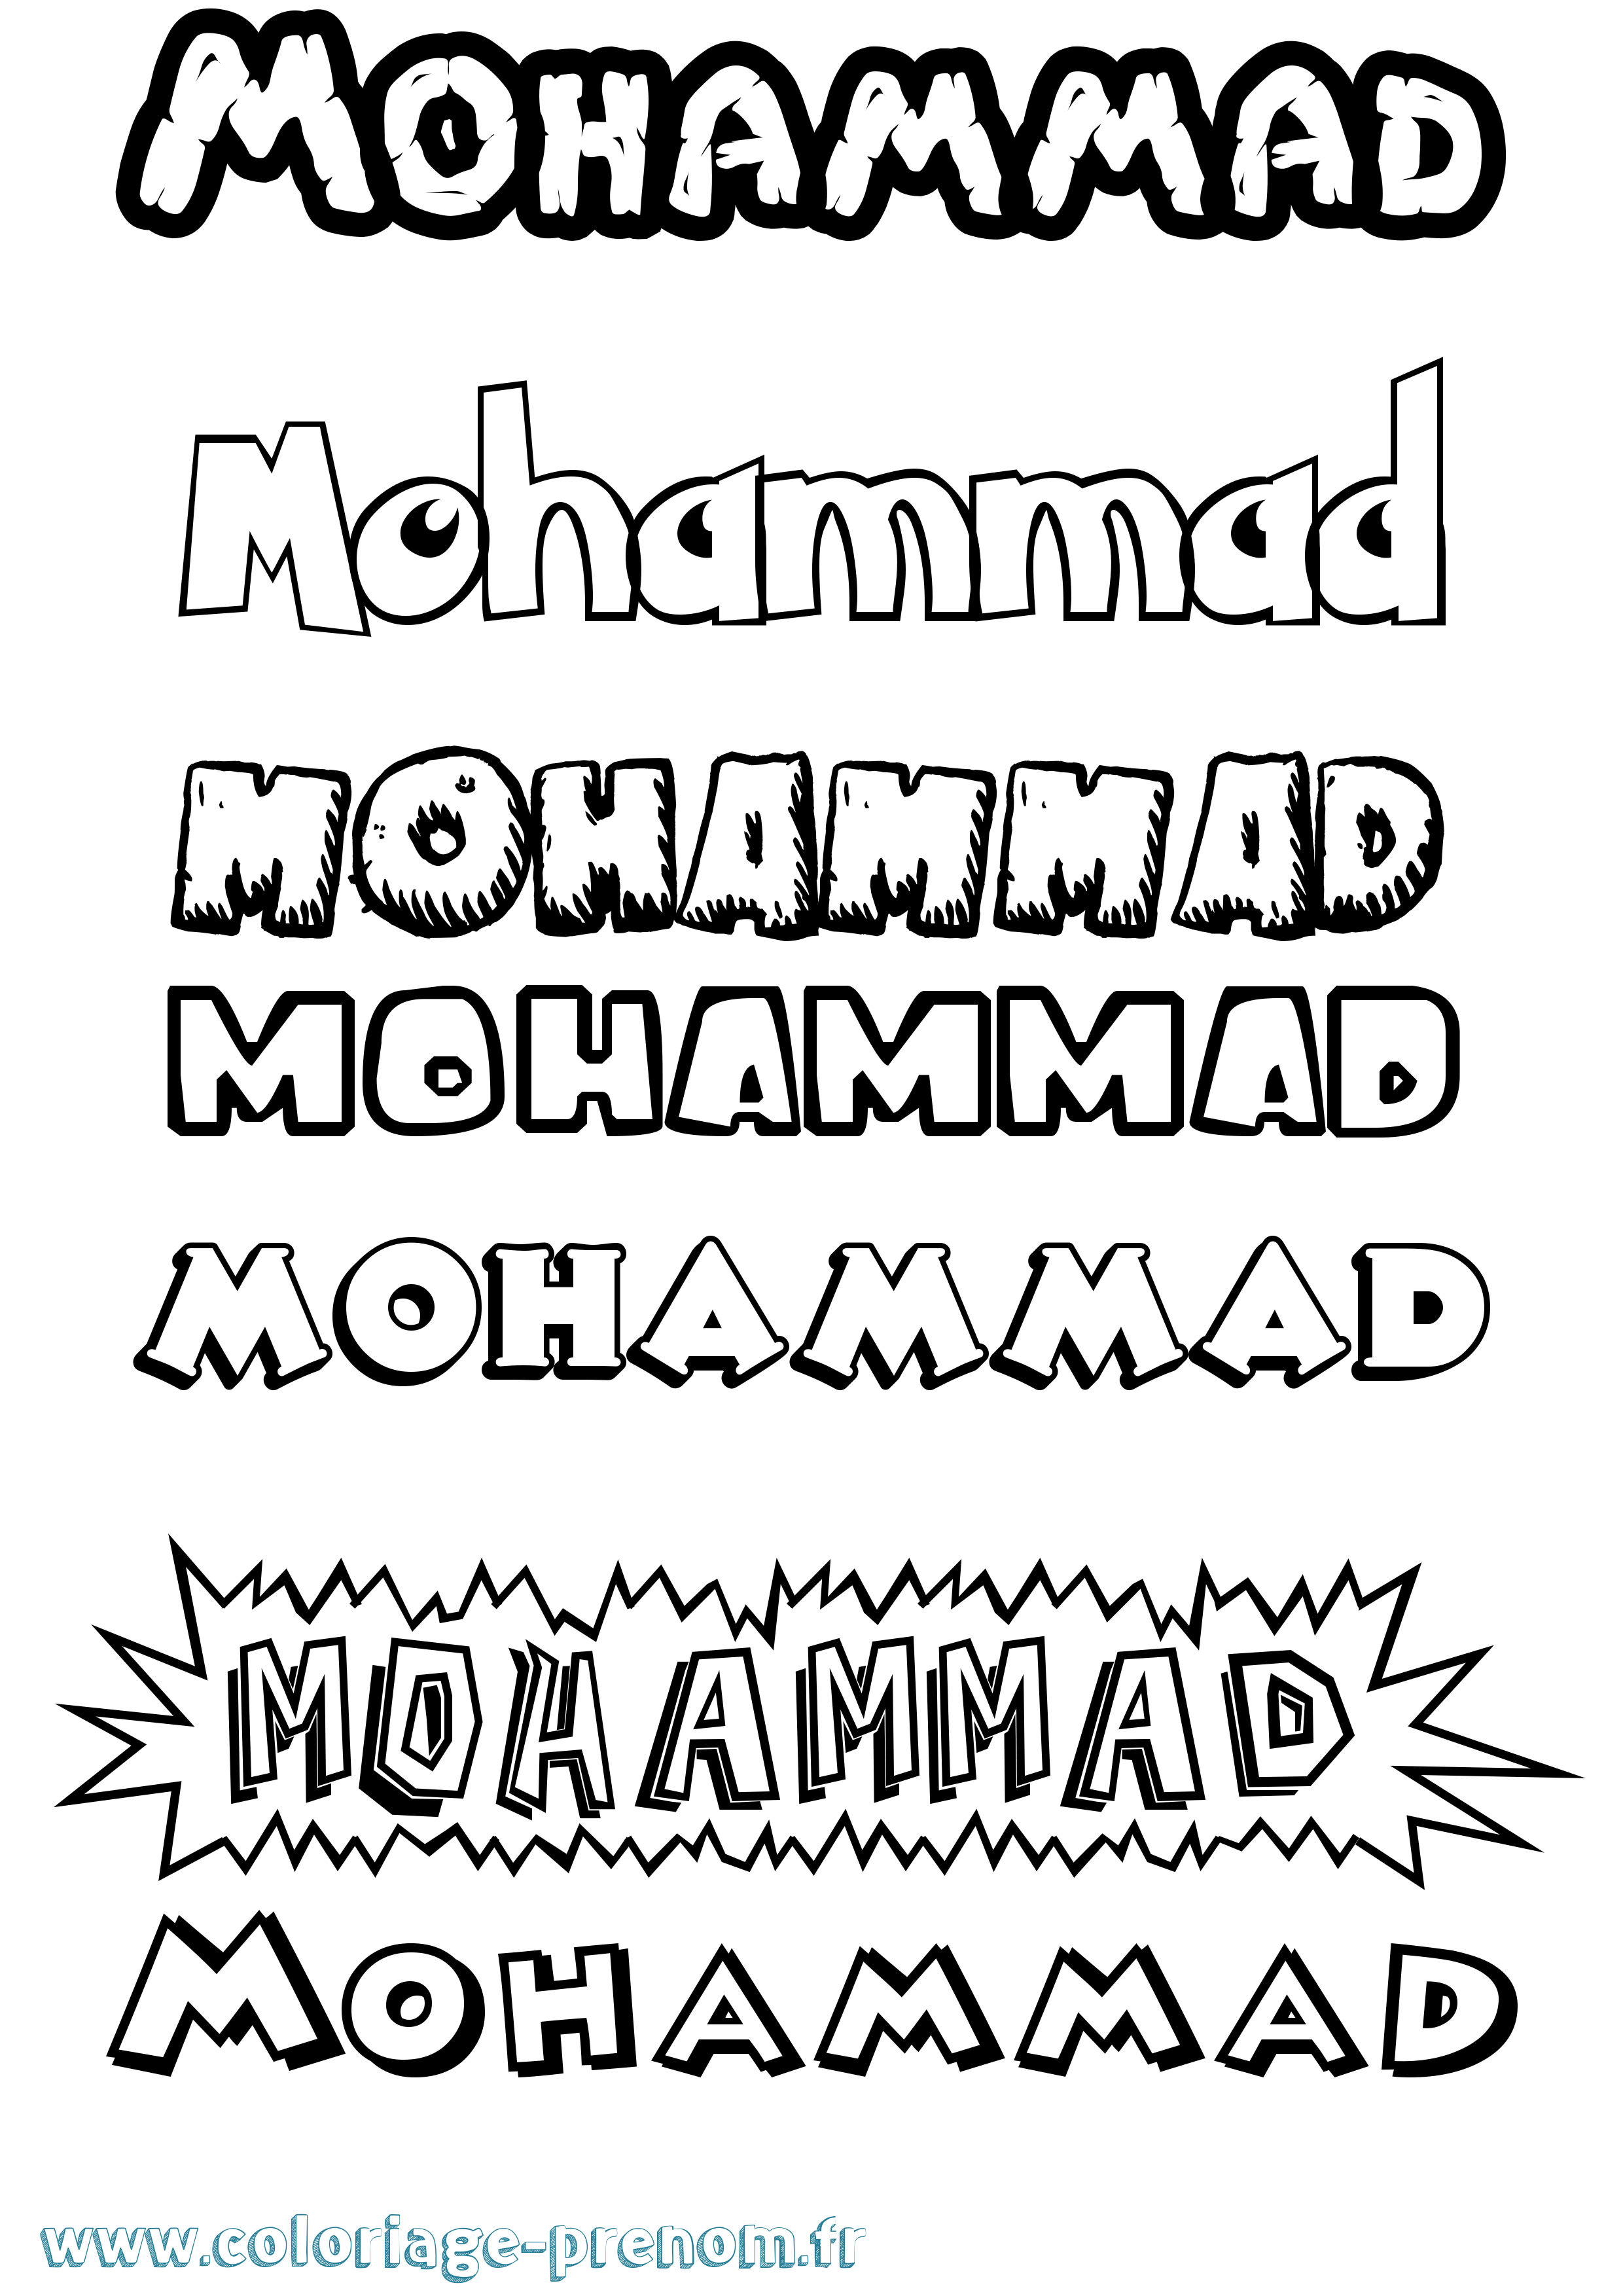 Coloriage prénom Mohammad Dessin Animé